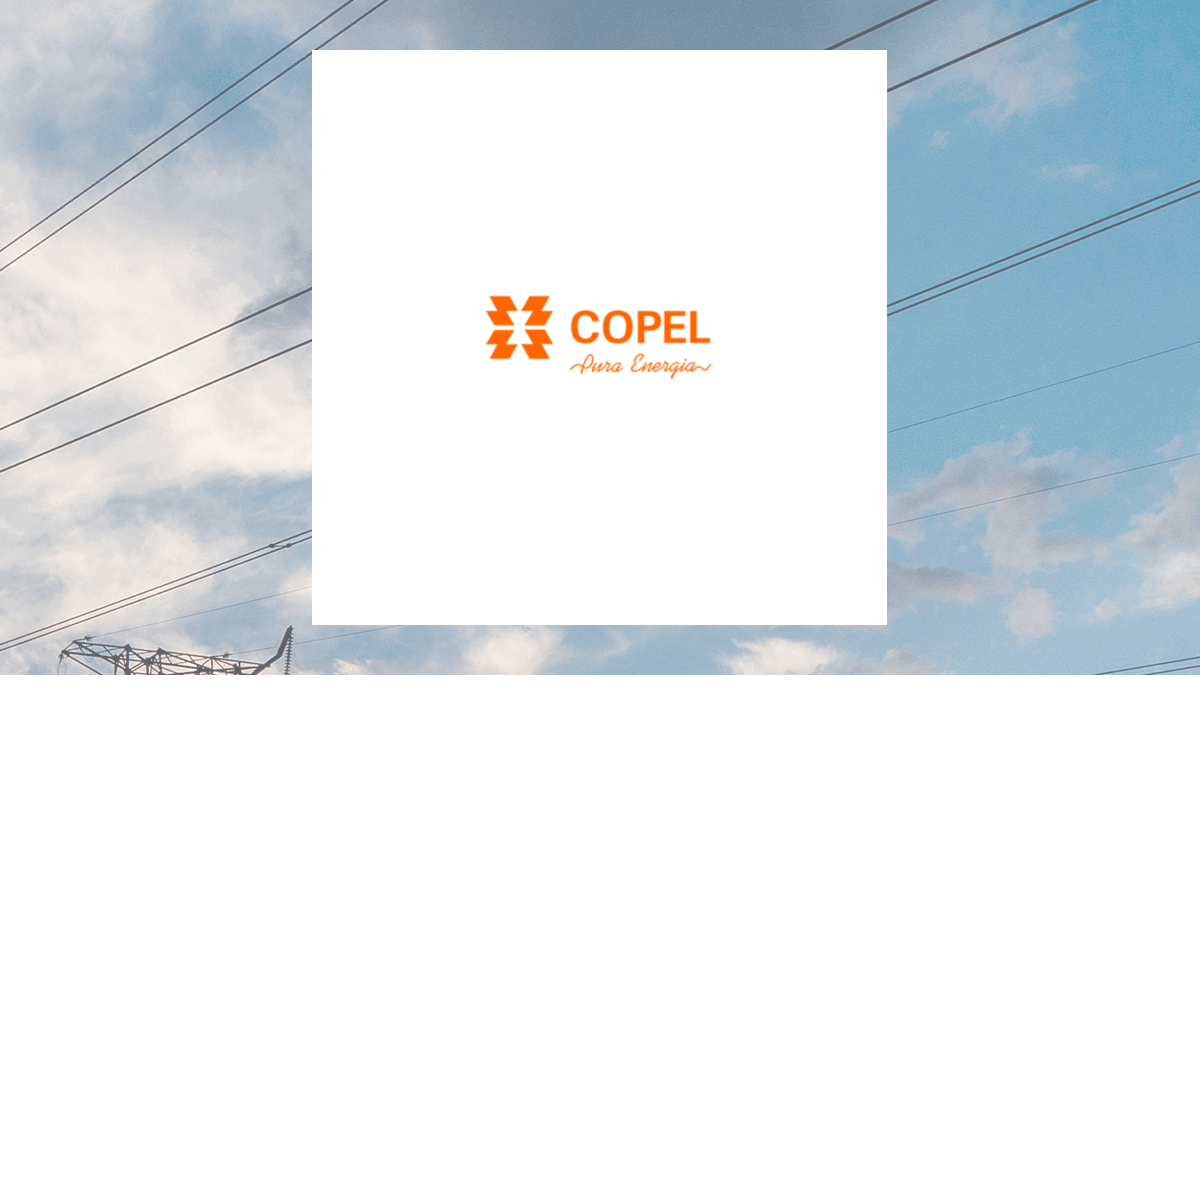 Companhia Paranaense de Energia - COPEL logo